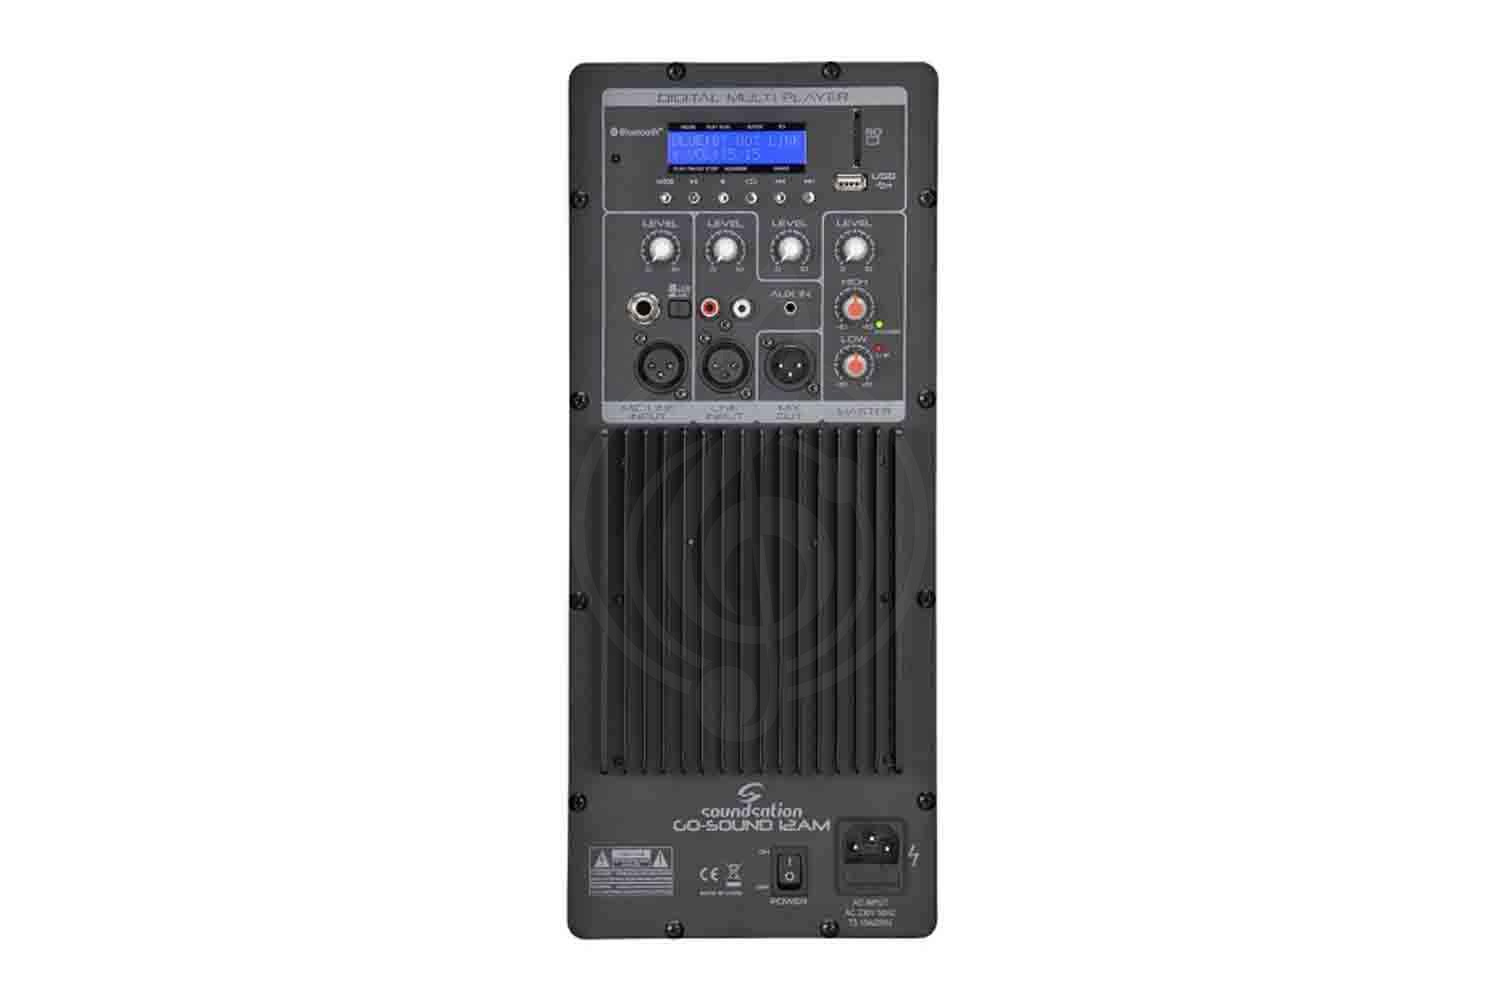 Активная акустическая система Soundsation Go-Sound-12AM (L483L) - Акустическая система активная, 880 Вт, Soundsation Go-Sound-12AM (L483L) в магазине DominantaMusic - фото 3